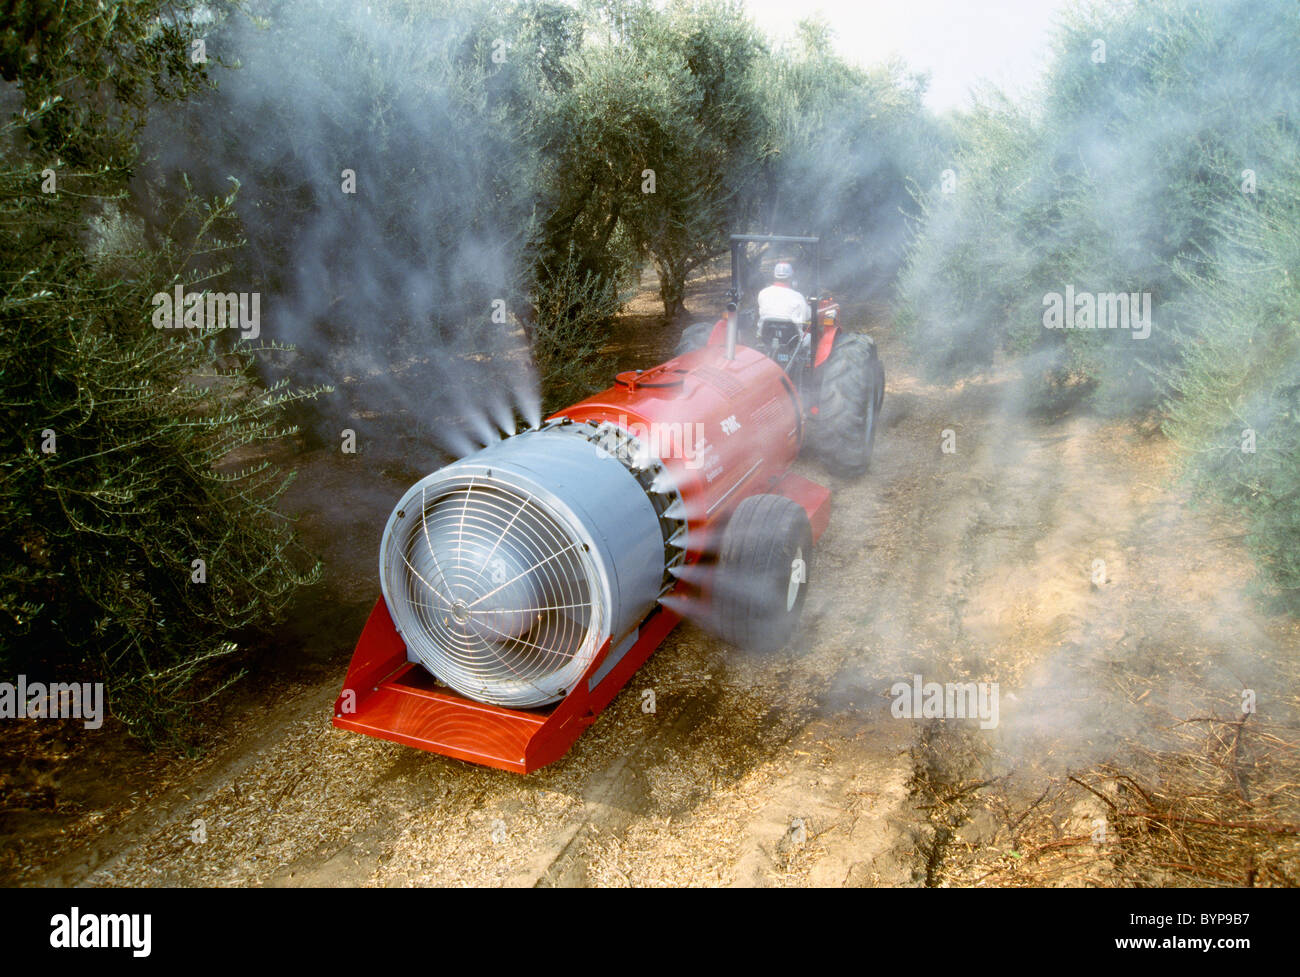 Agricultura - La aplicación de productos químicos, la fumigación en un olivar / El Condado de Tulare, California, Estados Unidos. Foto de stock